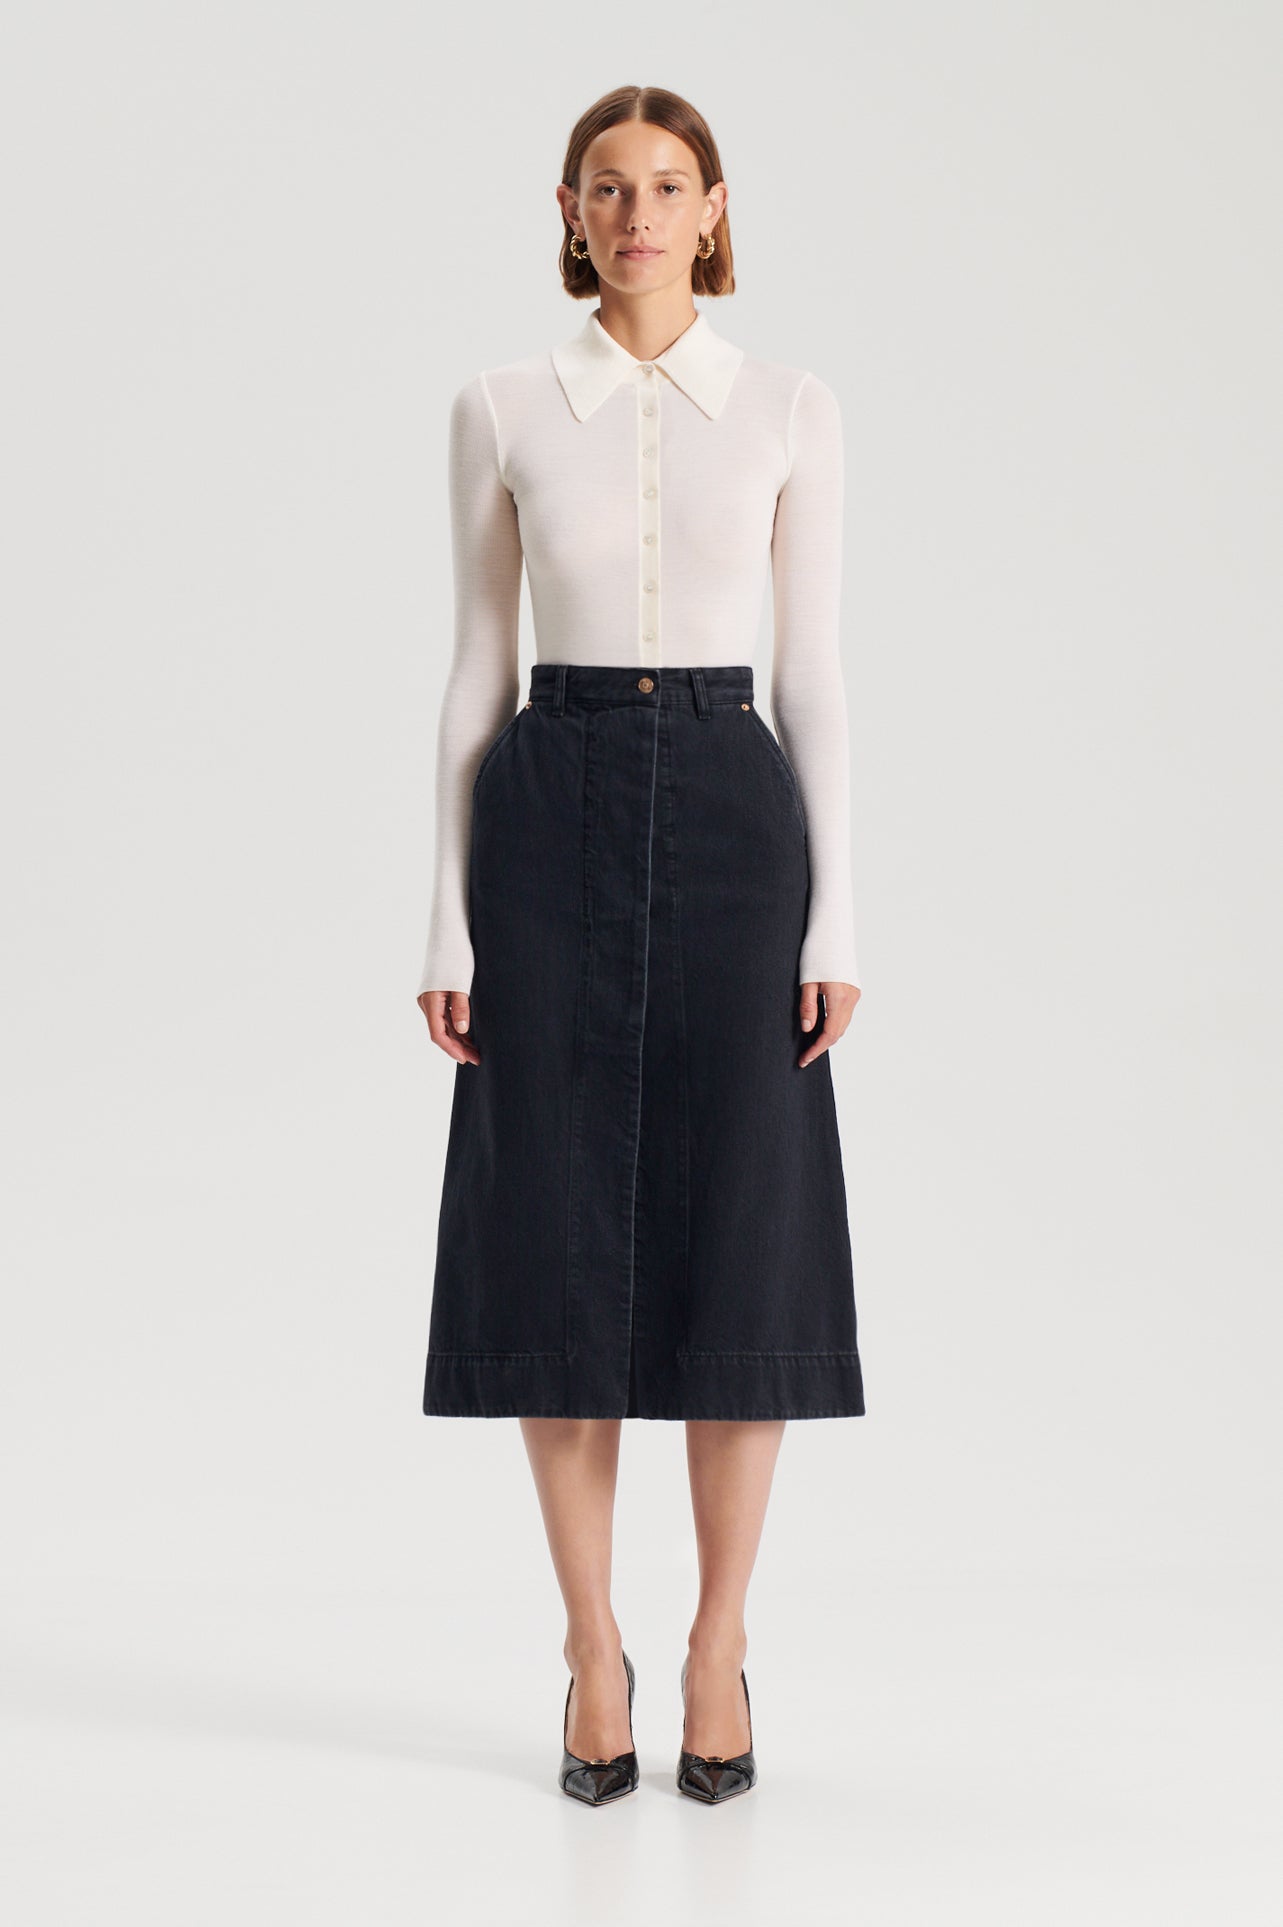 Bywenzai Short skirt Side Split Denim Skirt For Women In Summer L  Blackskirt : Amazon.co.uk: Fashion